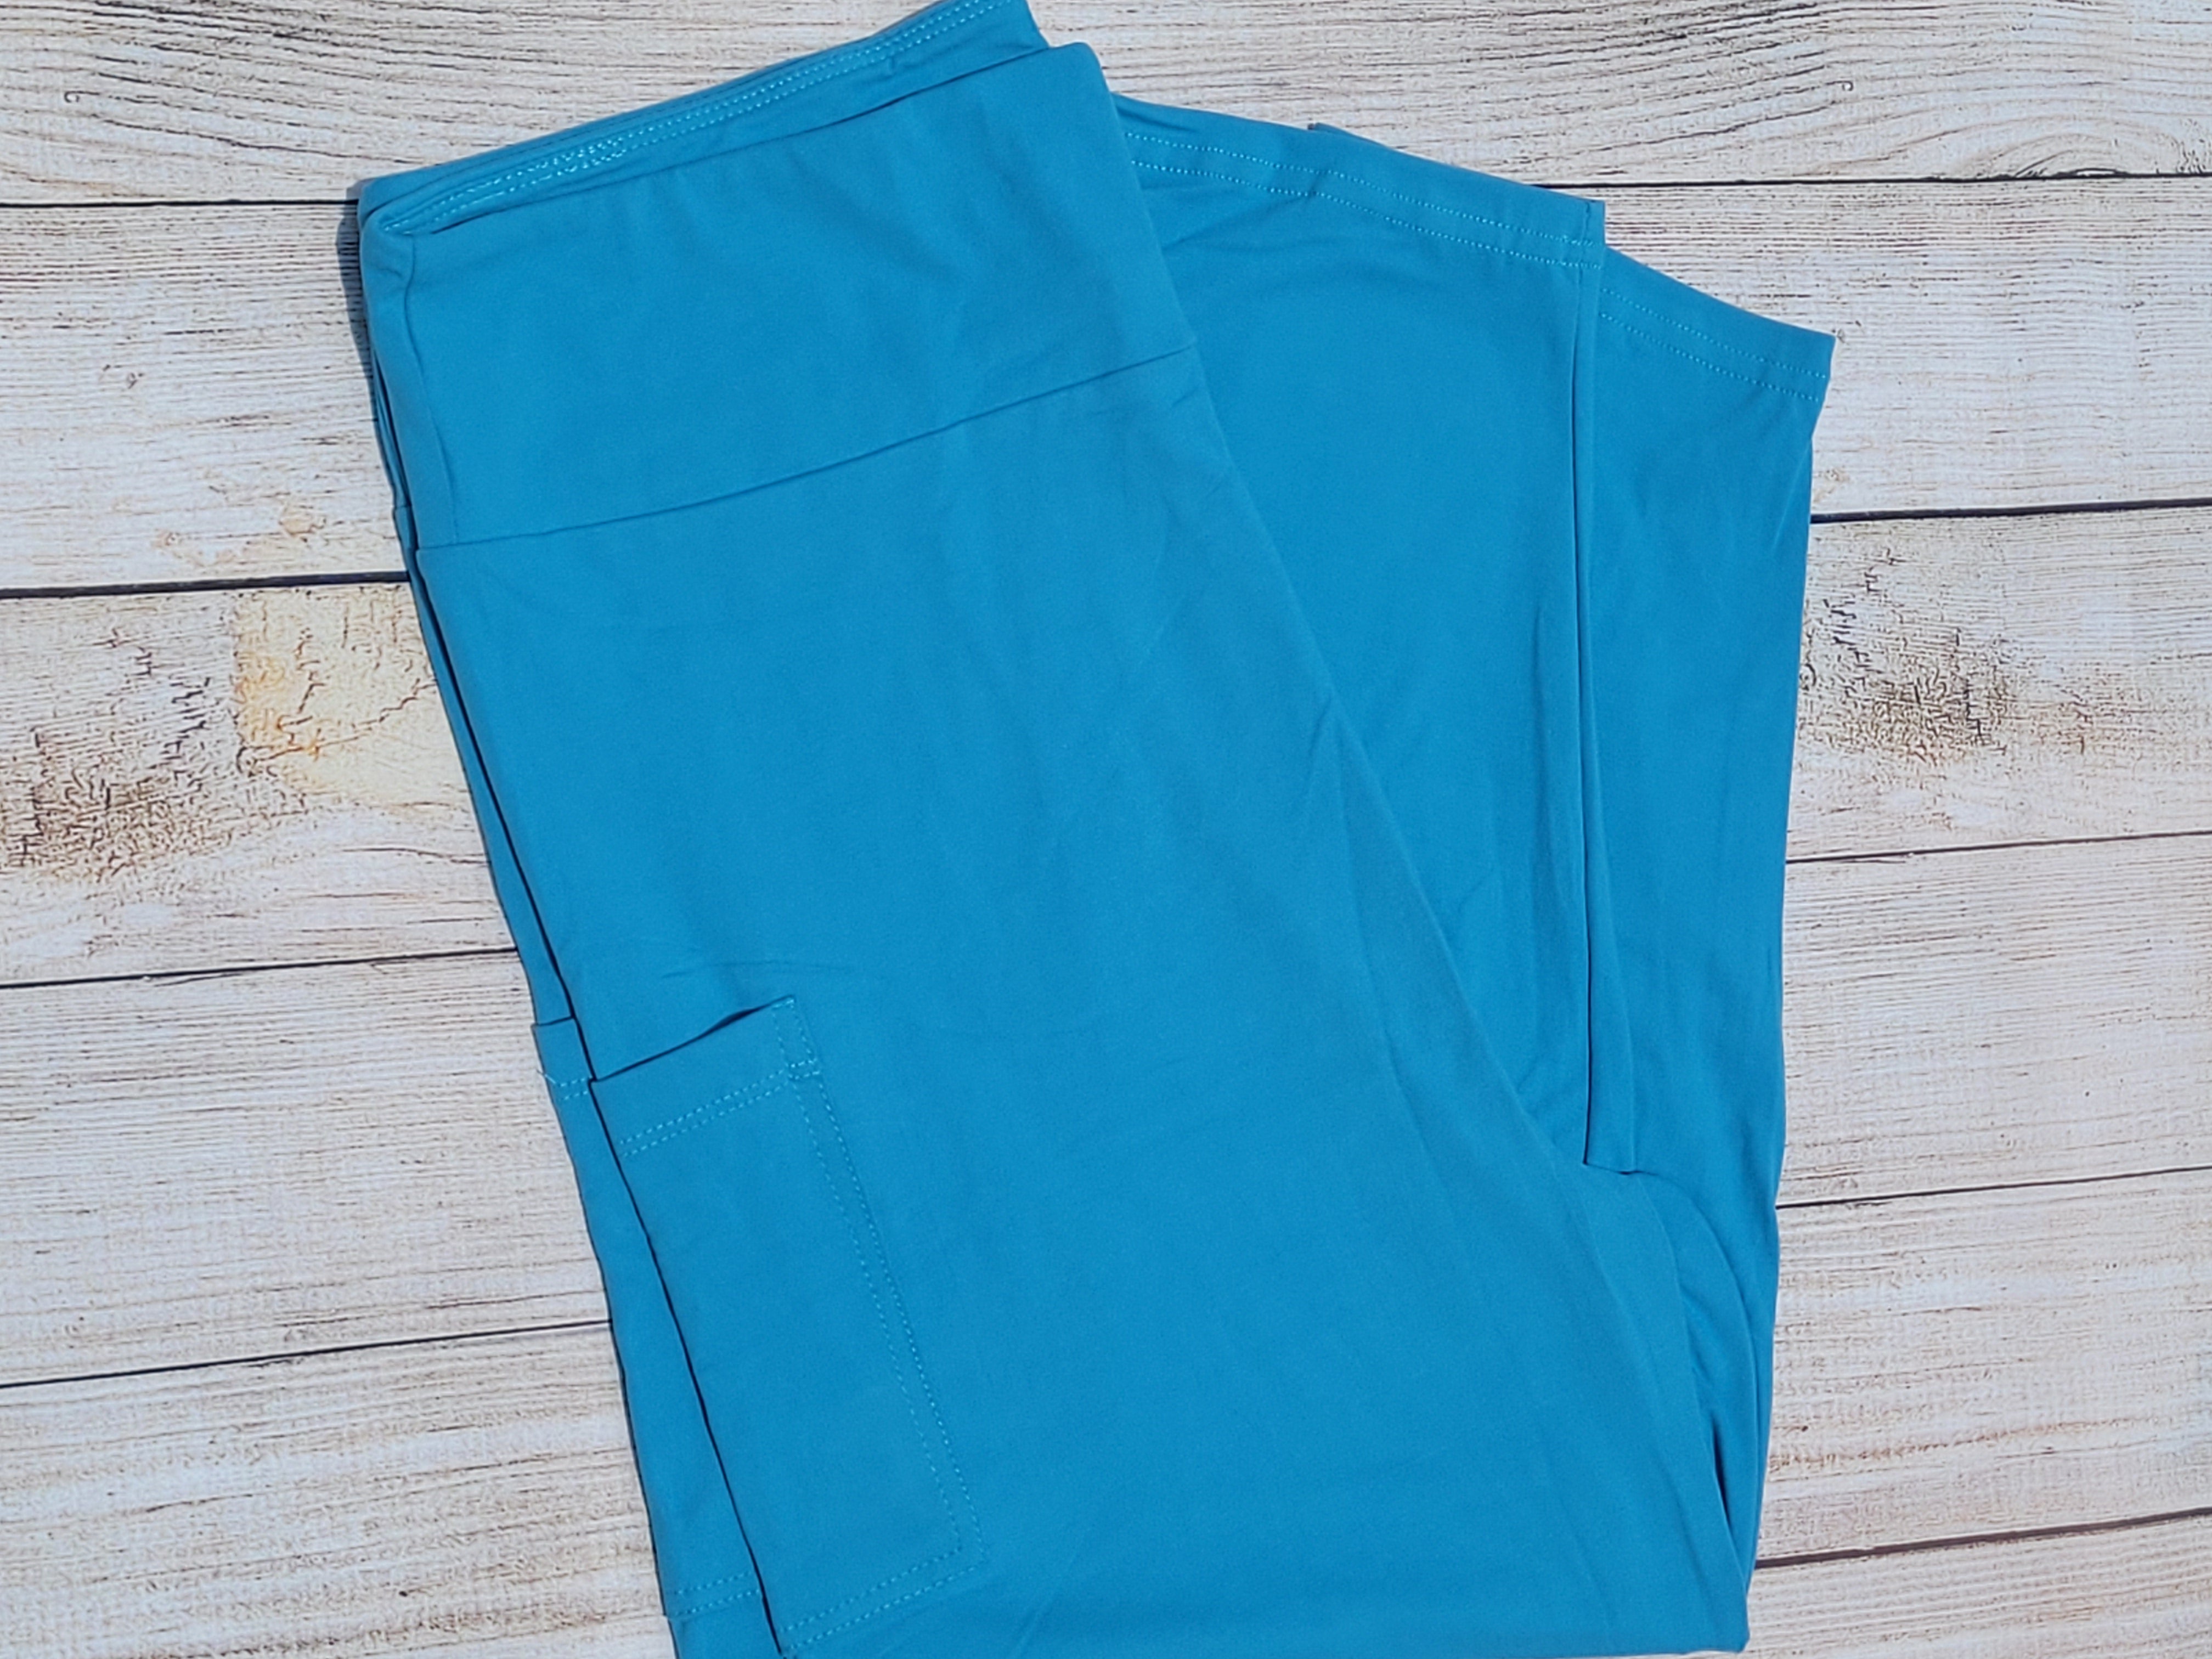 Aqua Blue capris and shorts